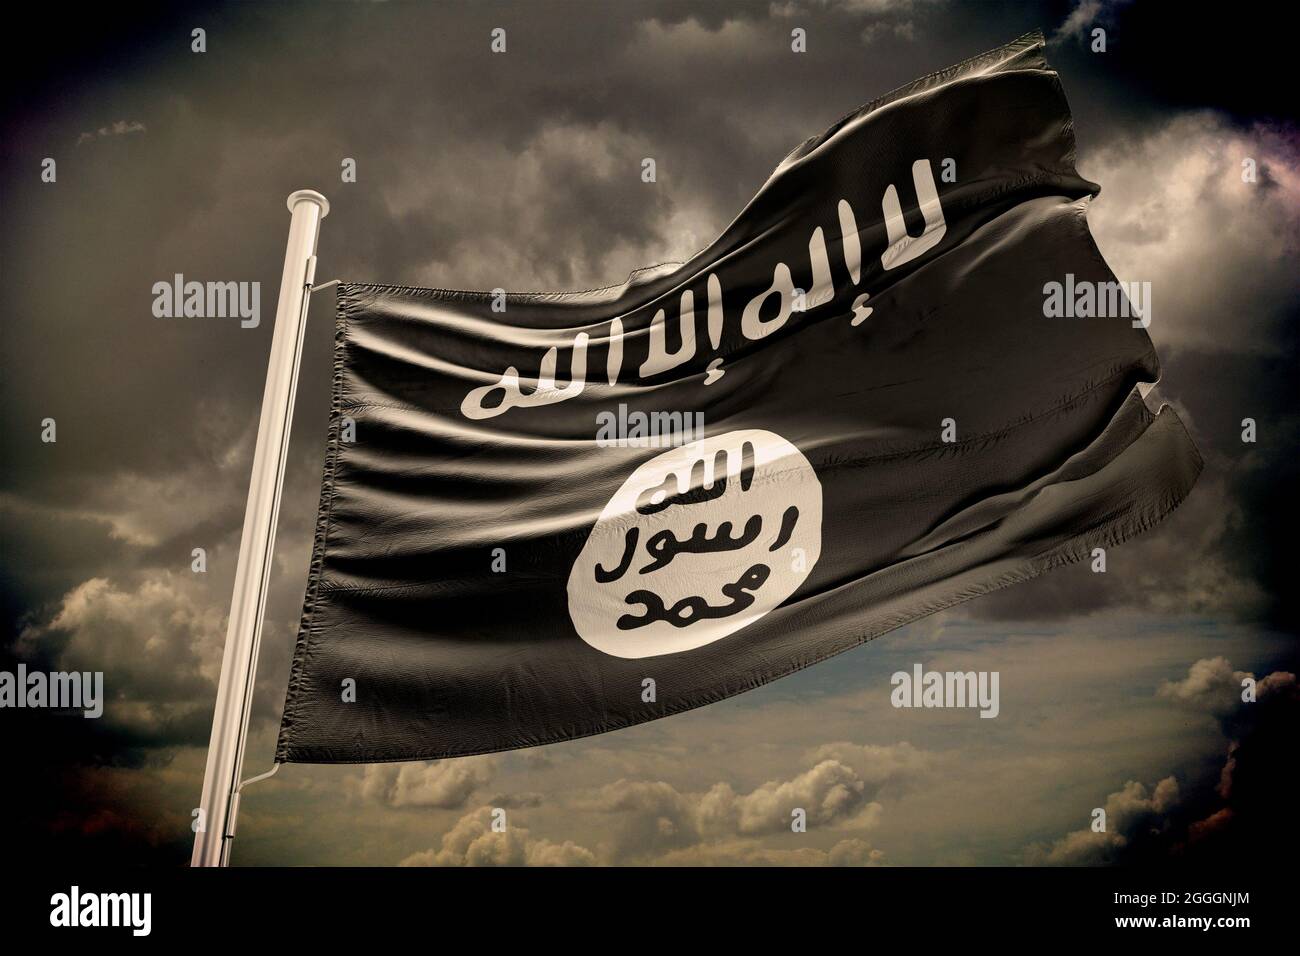 (Islamischer Staat, ISIS, IS, Daesh)der Islamische Staat Irak und die Levante, auch bekannt als die Flagge des Islamischen Staates Irak und Syrien (ISIS) Stockfoto